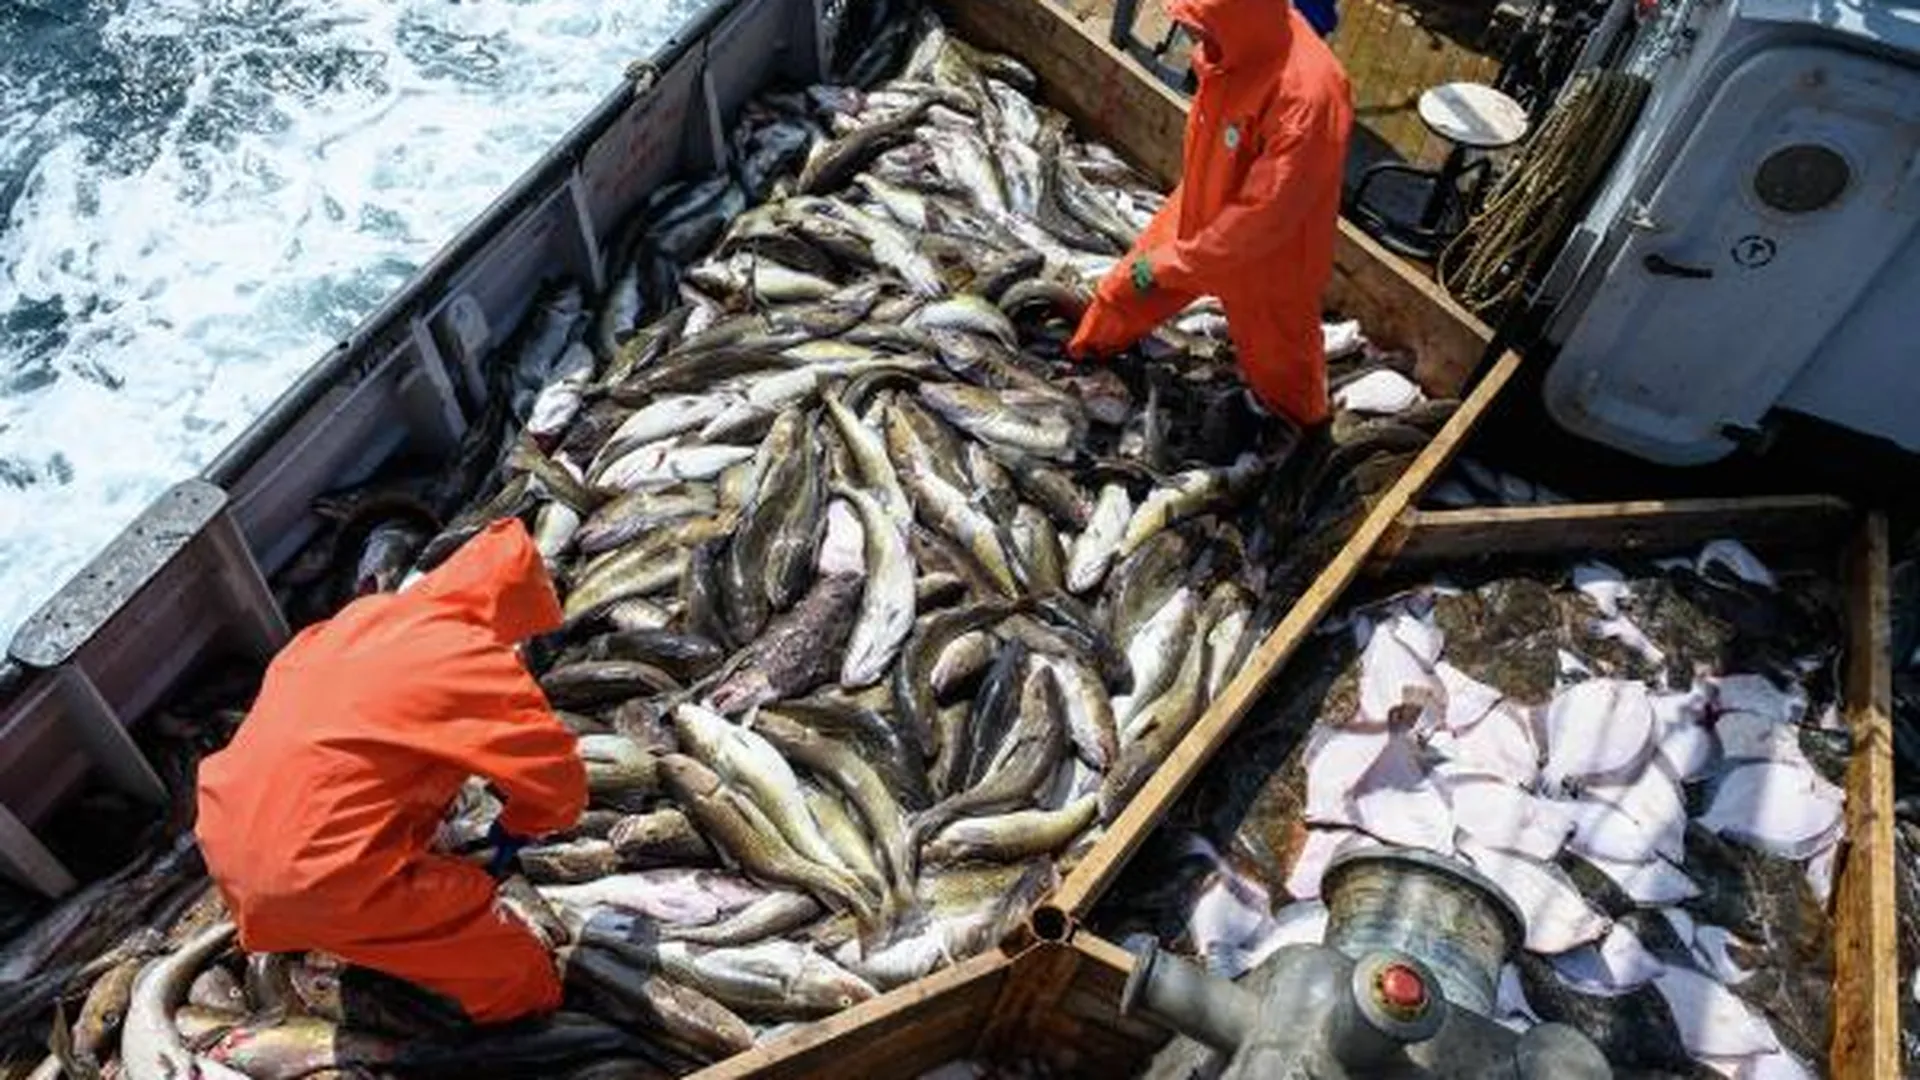 Сортировка улова во время добычи разнорыбицы в Охотском море экипажем МРС-379 ЗАО «Курильский рыбак» группы компаний «Гидрострой» острова Итуруп.